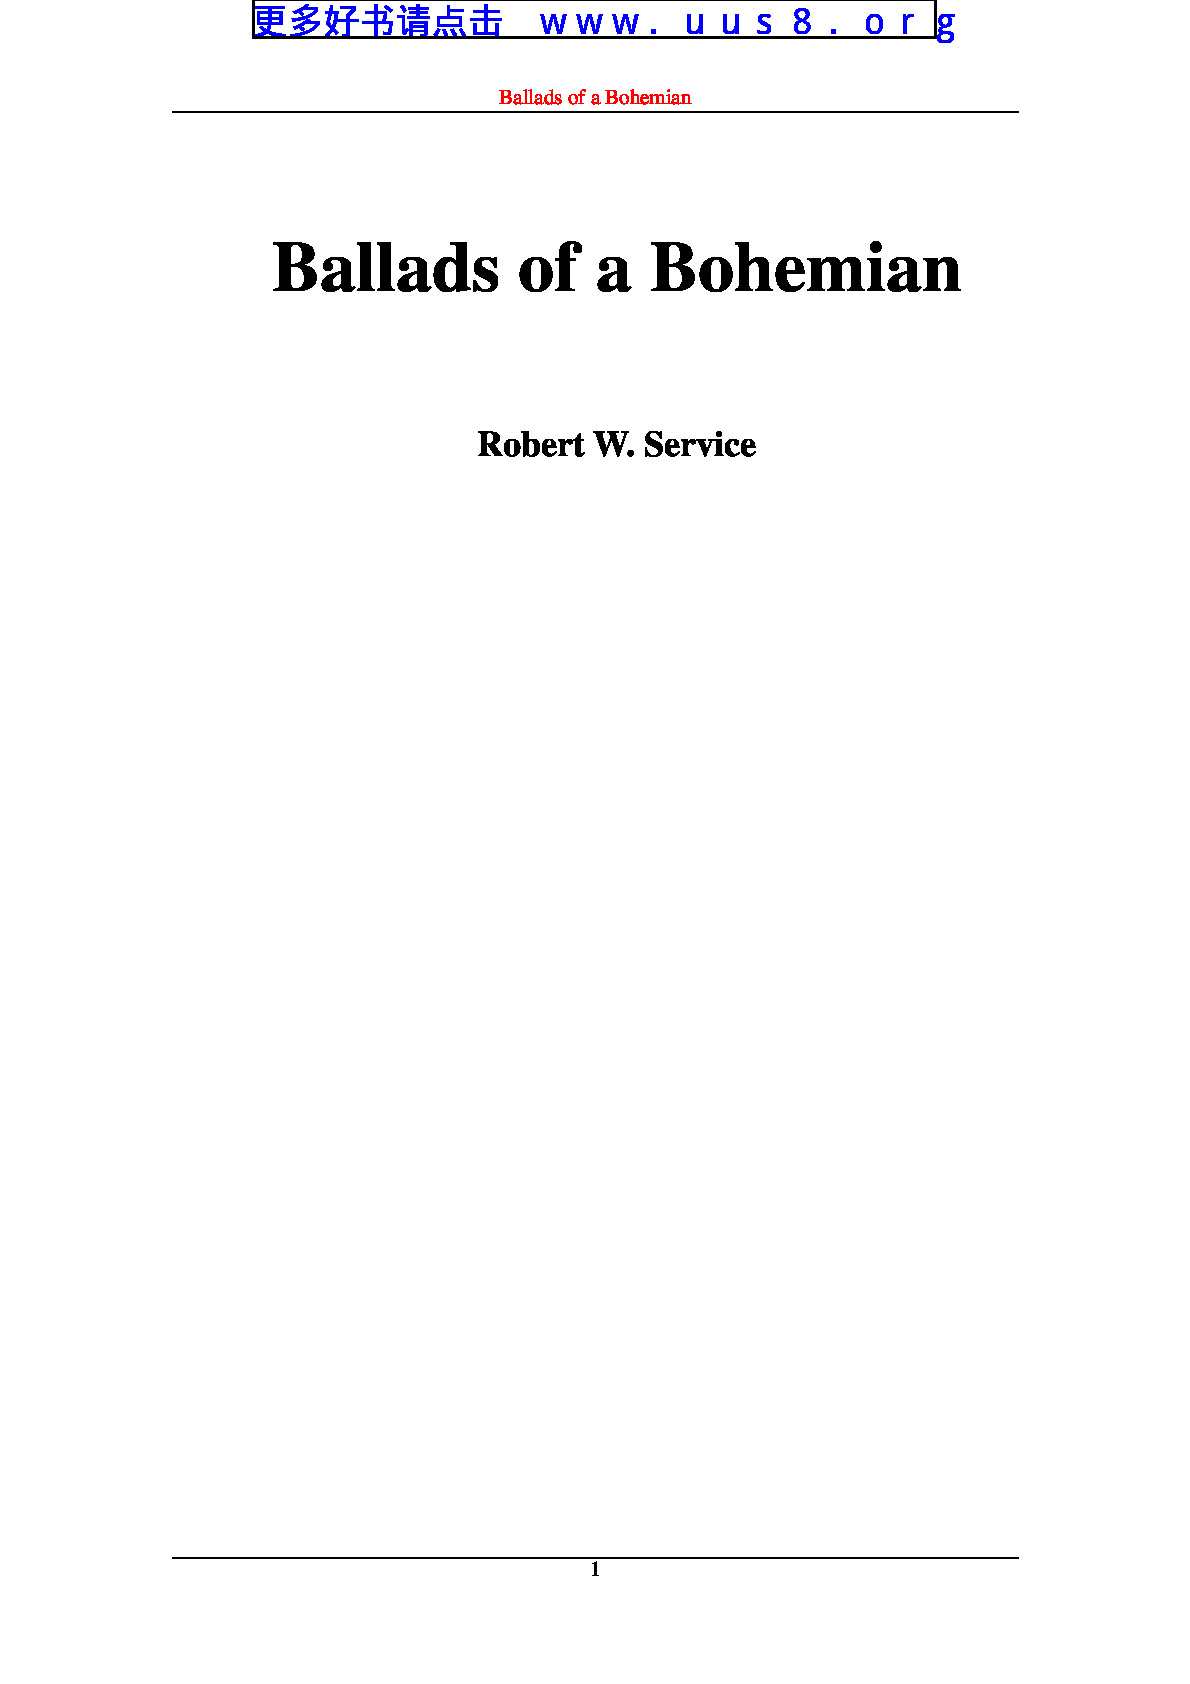 ballads_of_a_bohemian(波西米亚民歌)